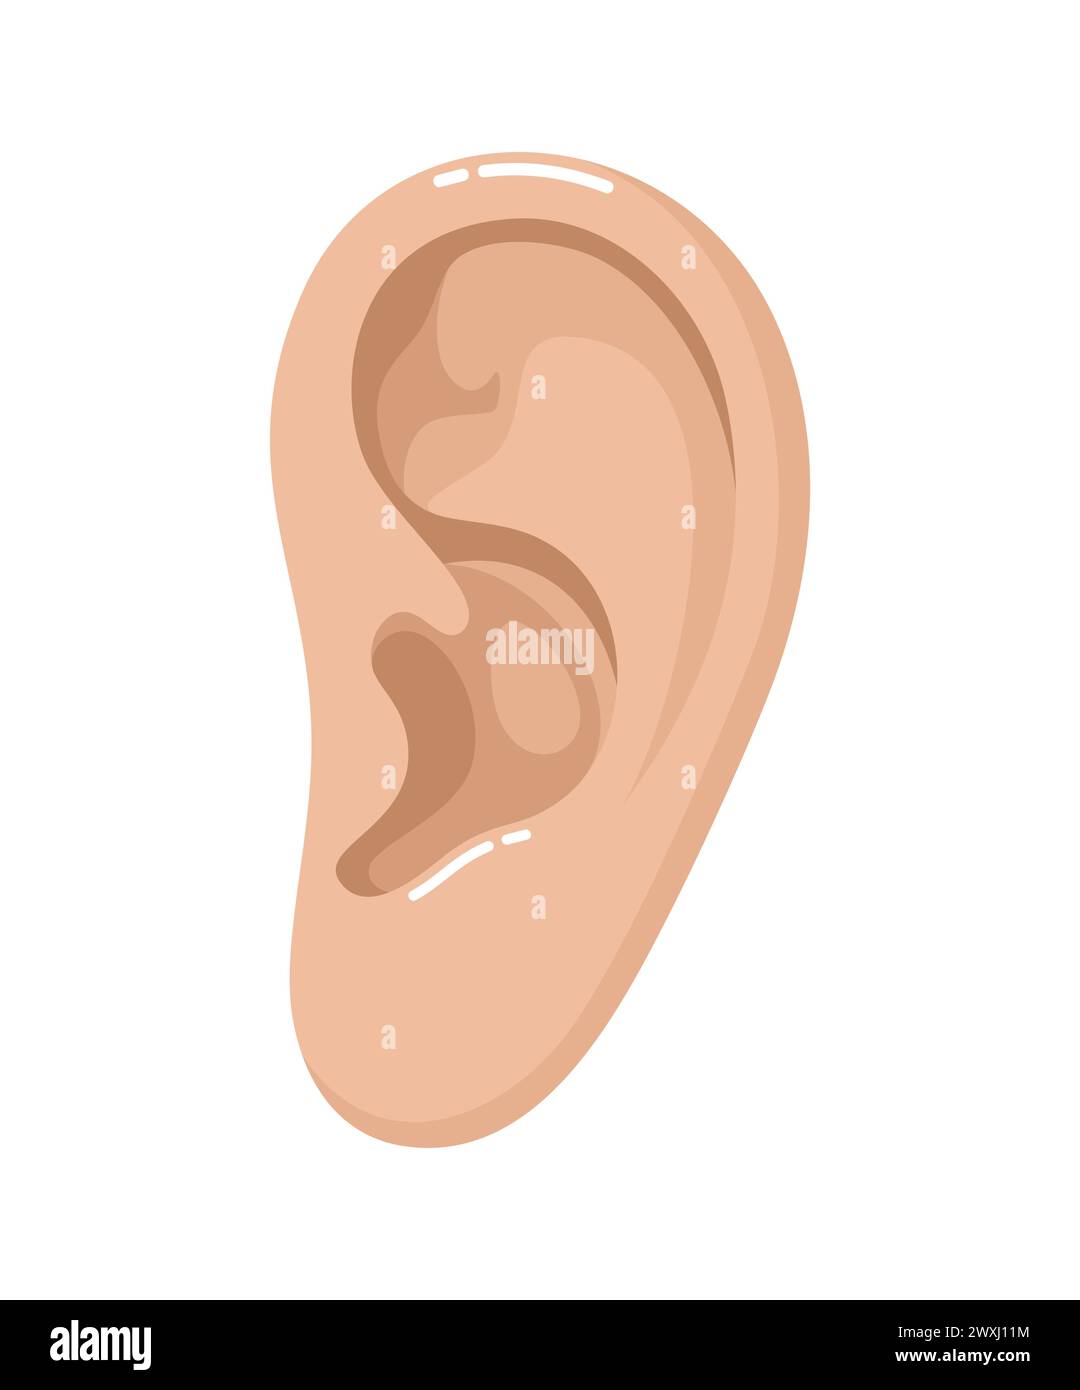 Menschliches Ohr isoliert auf weißem Hintergrund. Illustration des flachen Vektors Stock Vektor